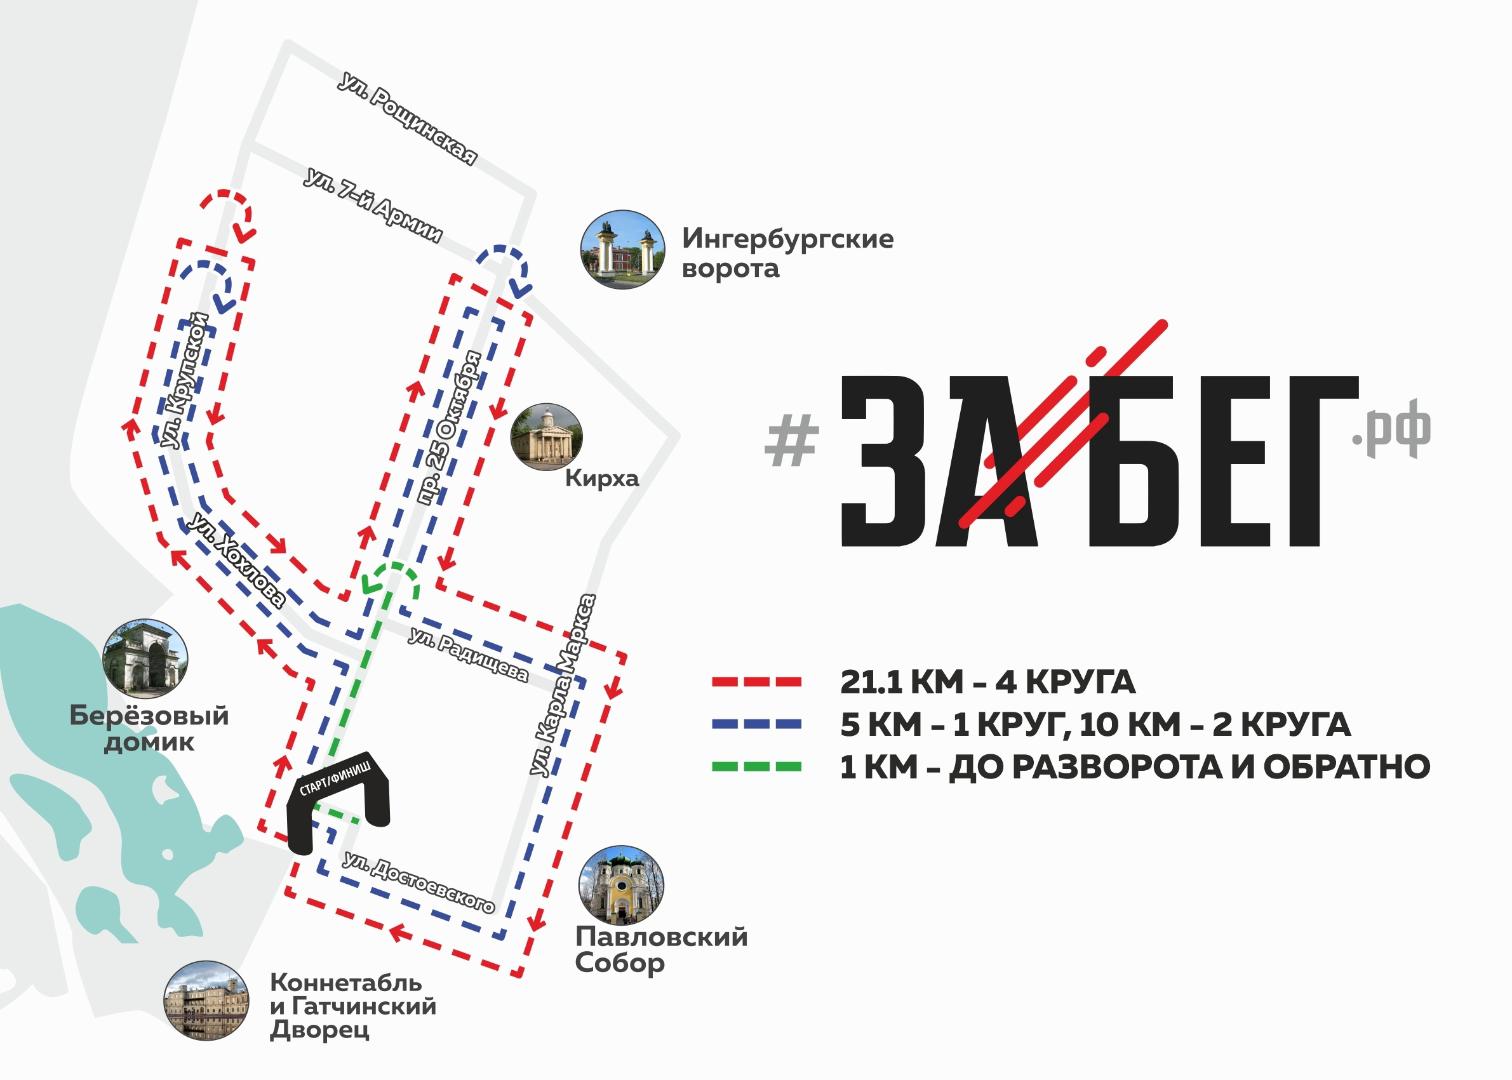 «ЗаБег.РФ» 30 мая ограничит движение в Гатчине